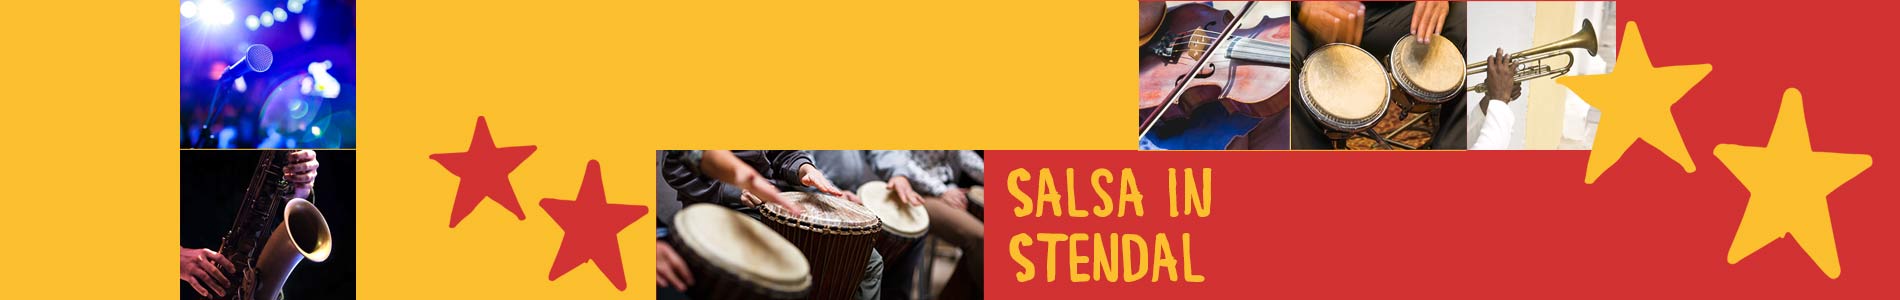 Salsa in Stendal – Salsa lernen und tanzen, Tanzkurse, Partys, Veranstaltungen